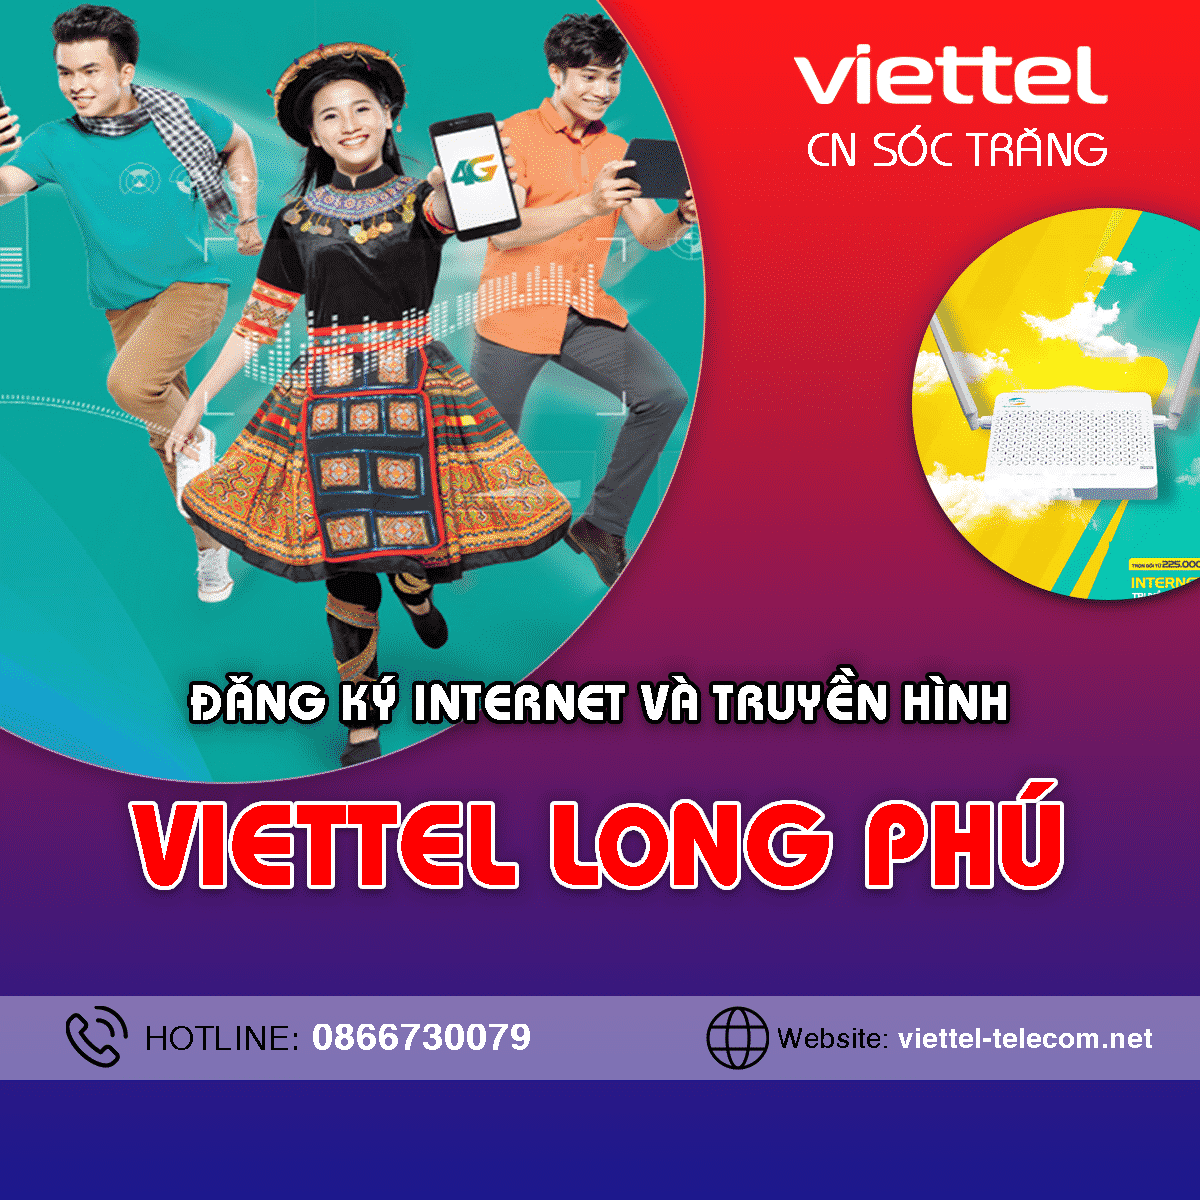 Khuyến mãi lắp mạng Internet + Truyền hình Viettel Long Phú